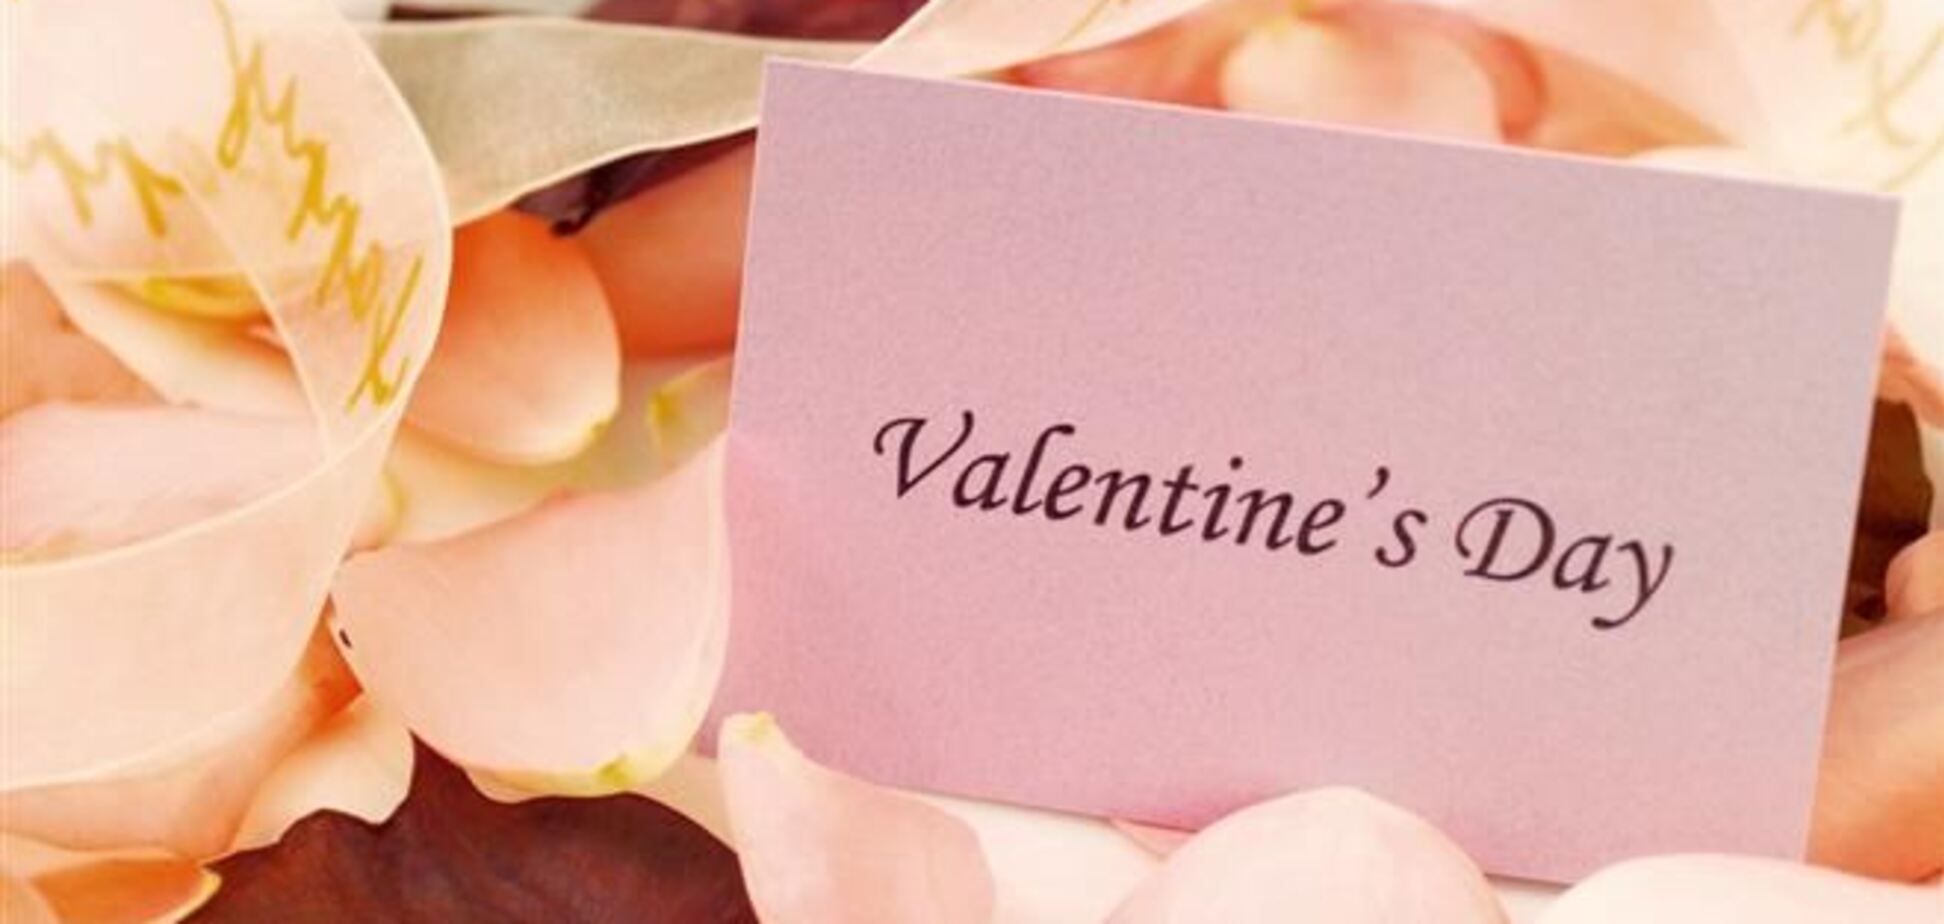 Скільки готові витратити українці на подарунок у День Валентина - дослідження